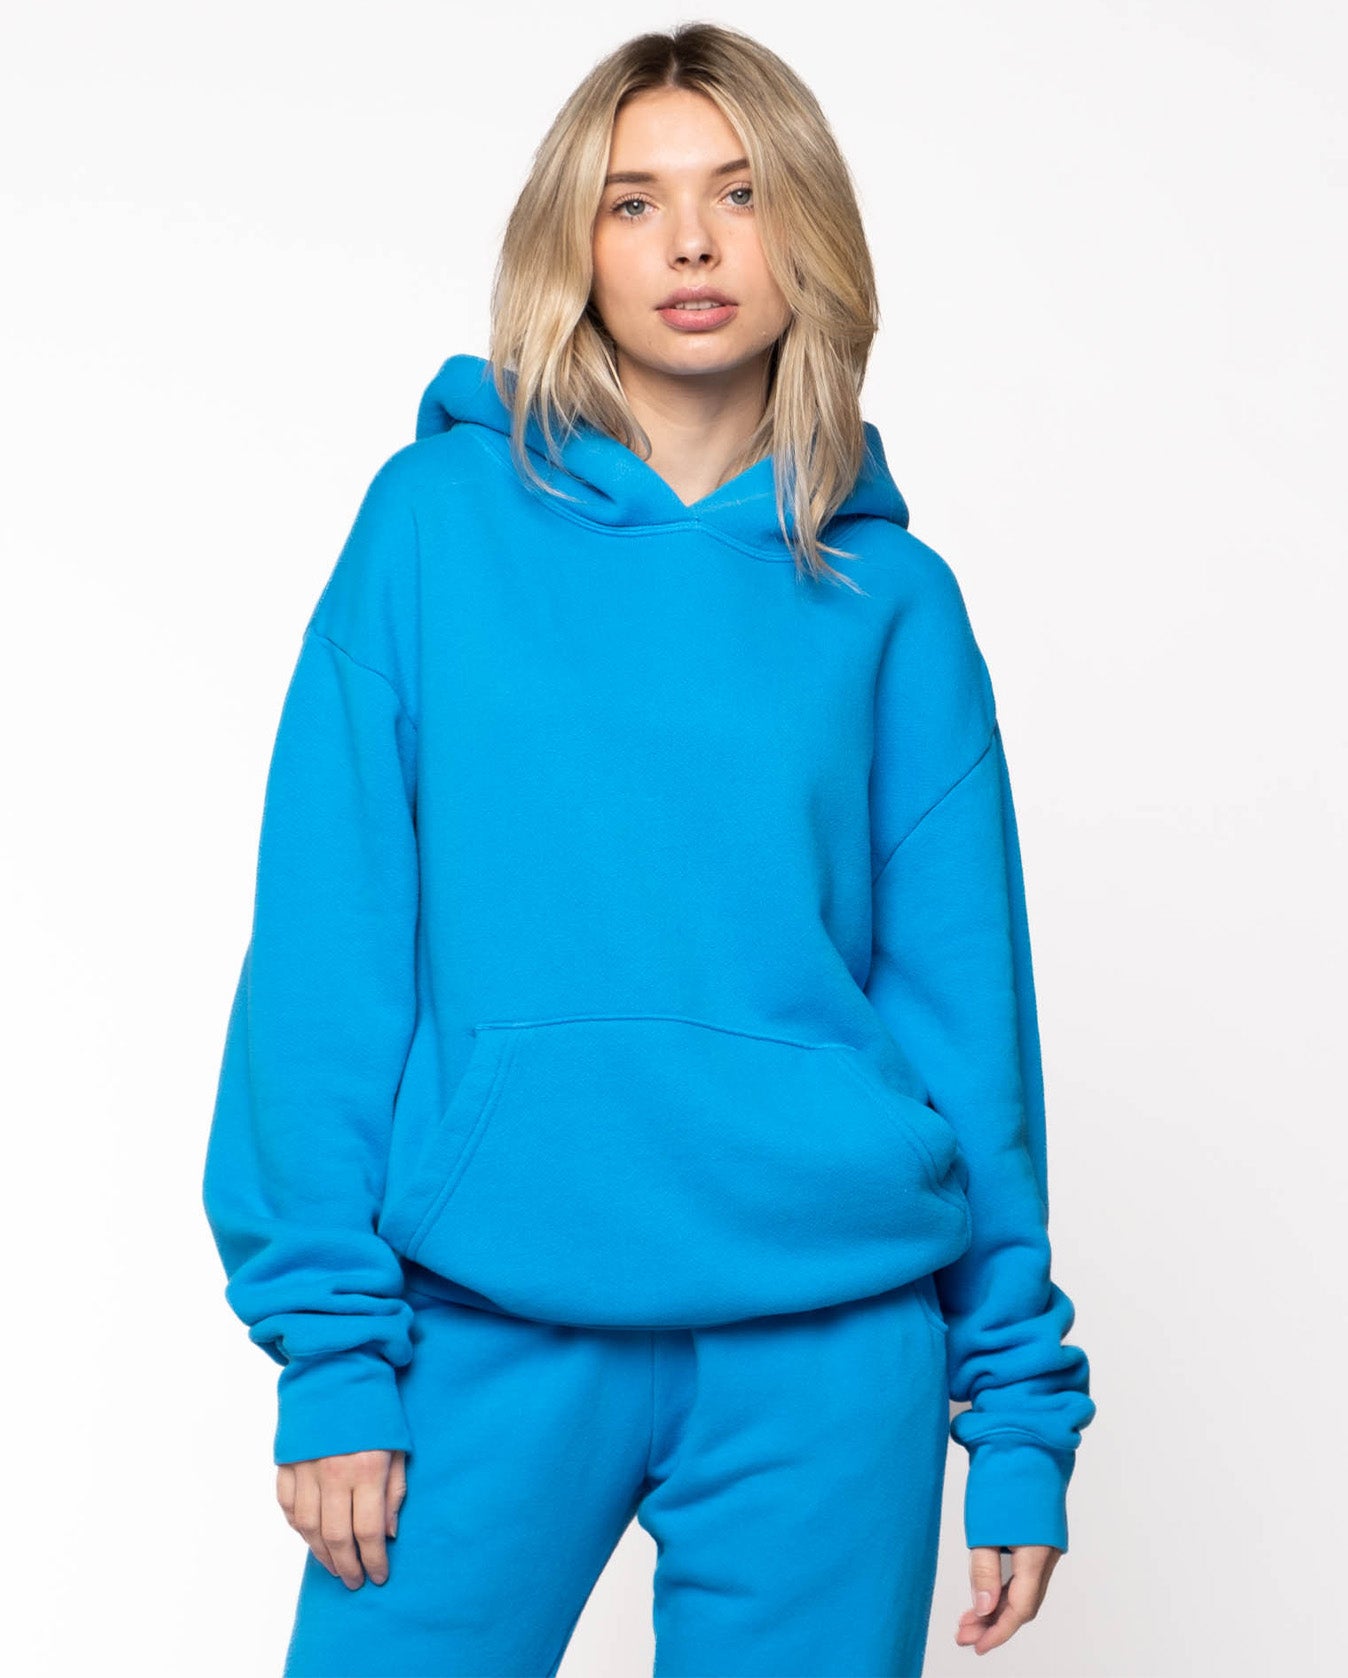 Asher La - Women's Hoodie in Turquoise Sweatshirt | Size: 3XL | Fred Segal